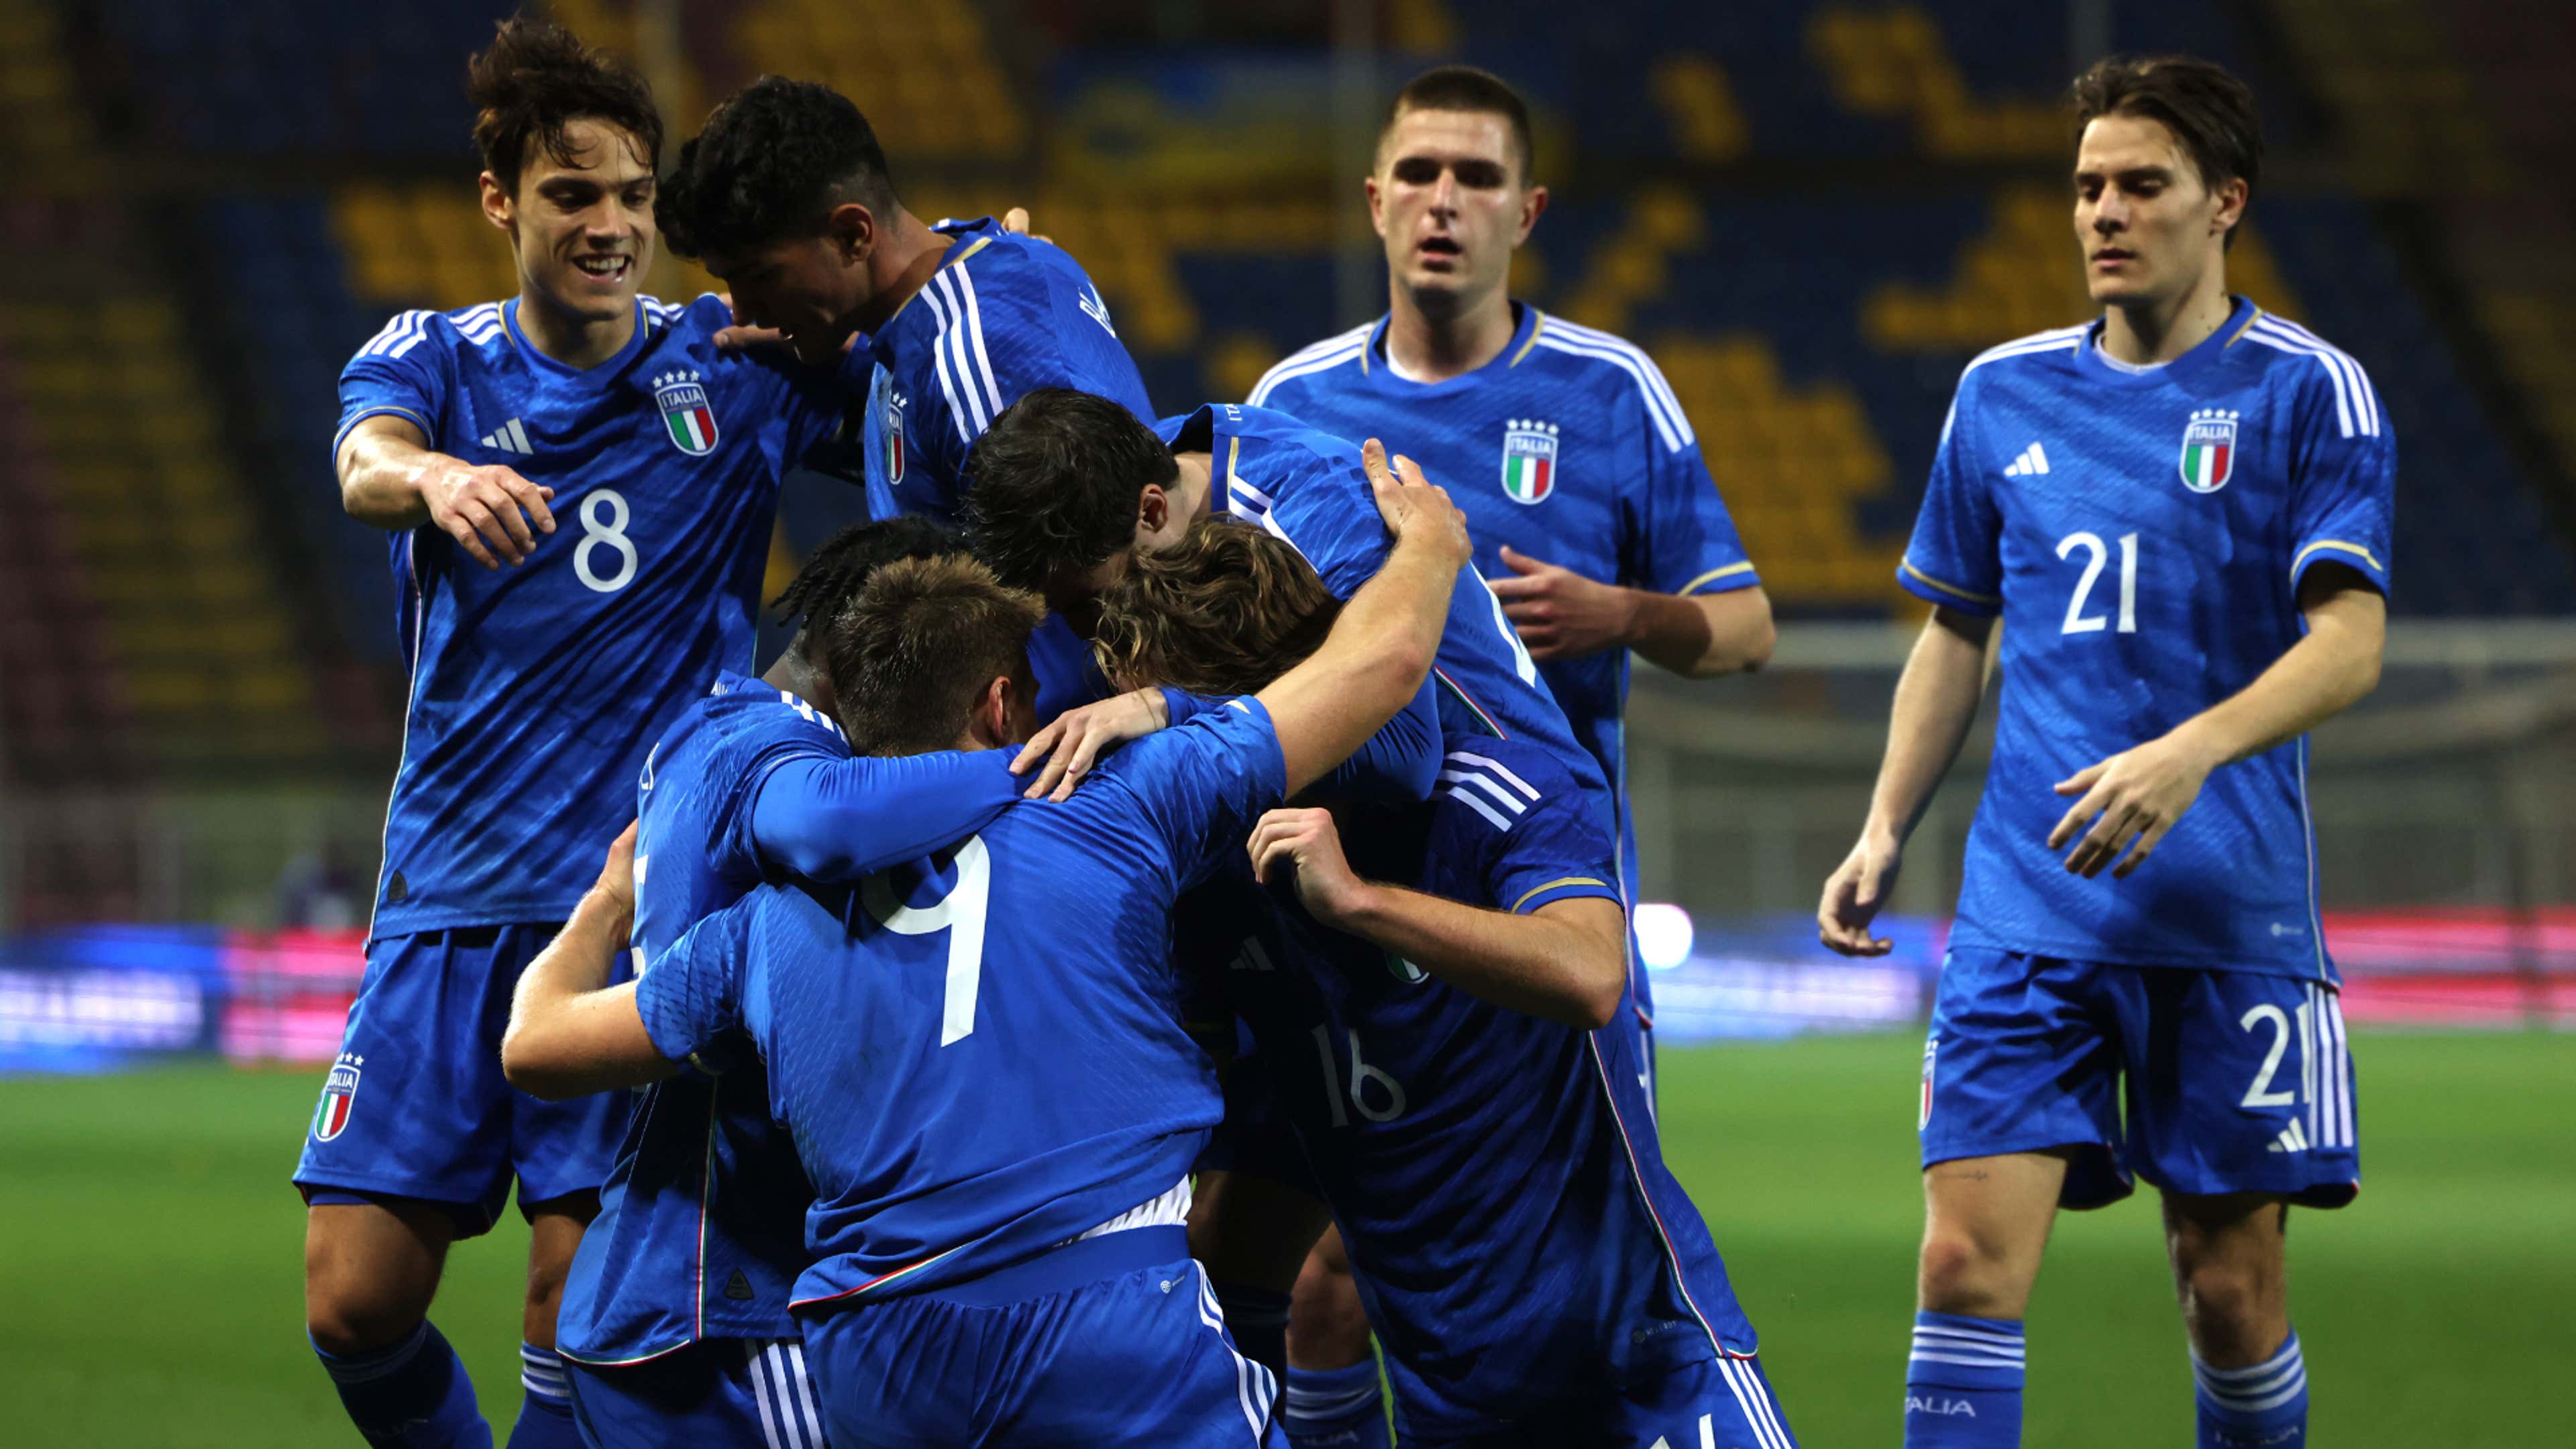 Irlanda U-21-Italia U-21, le formazioni ufficiali: c'è Gnonto